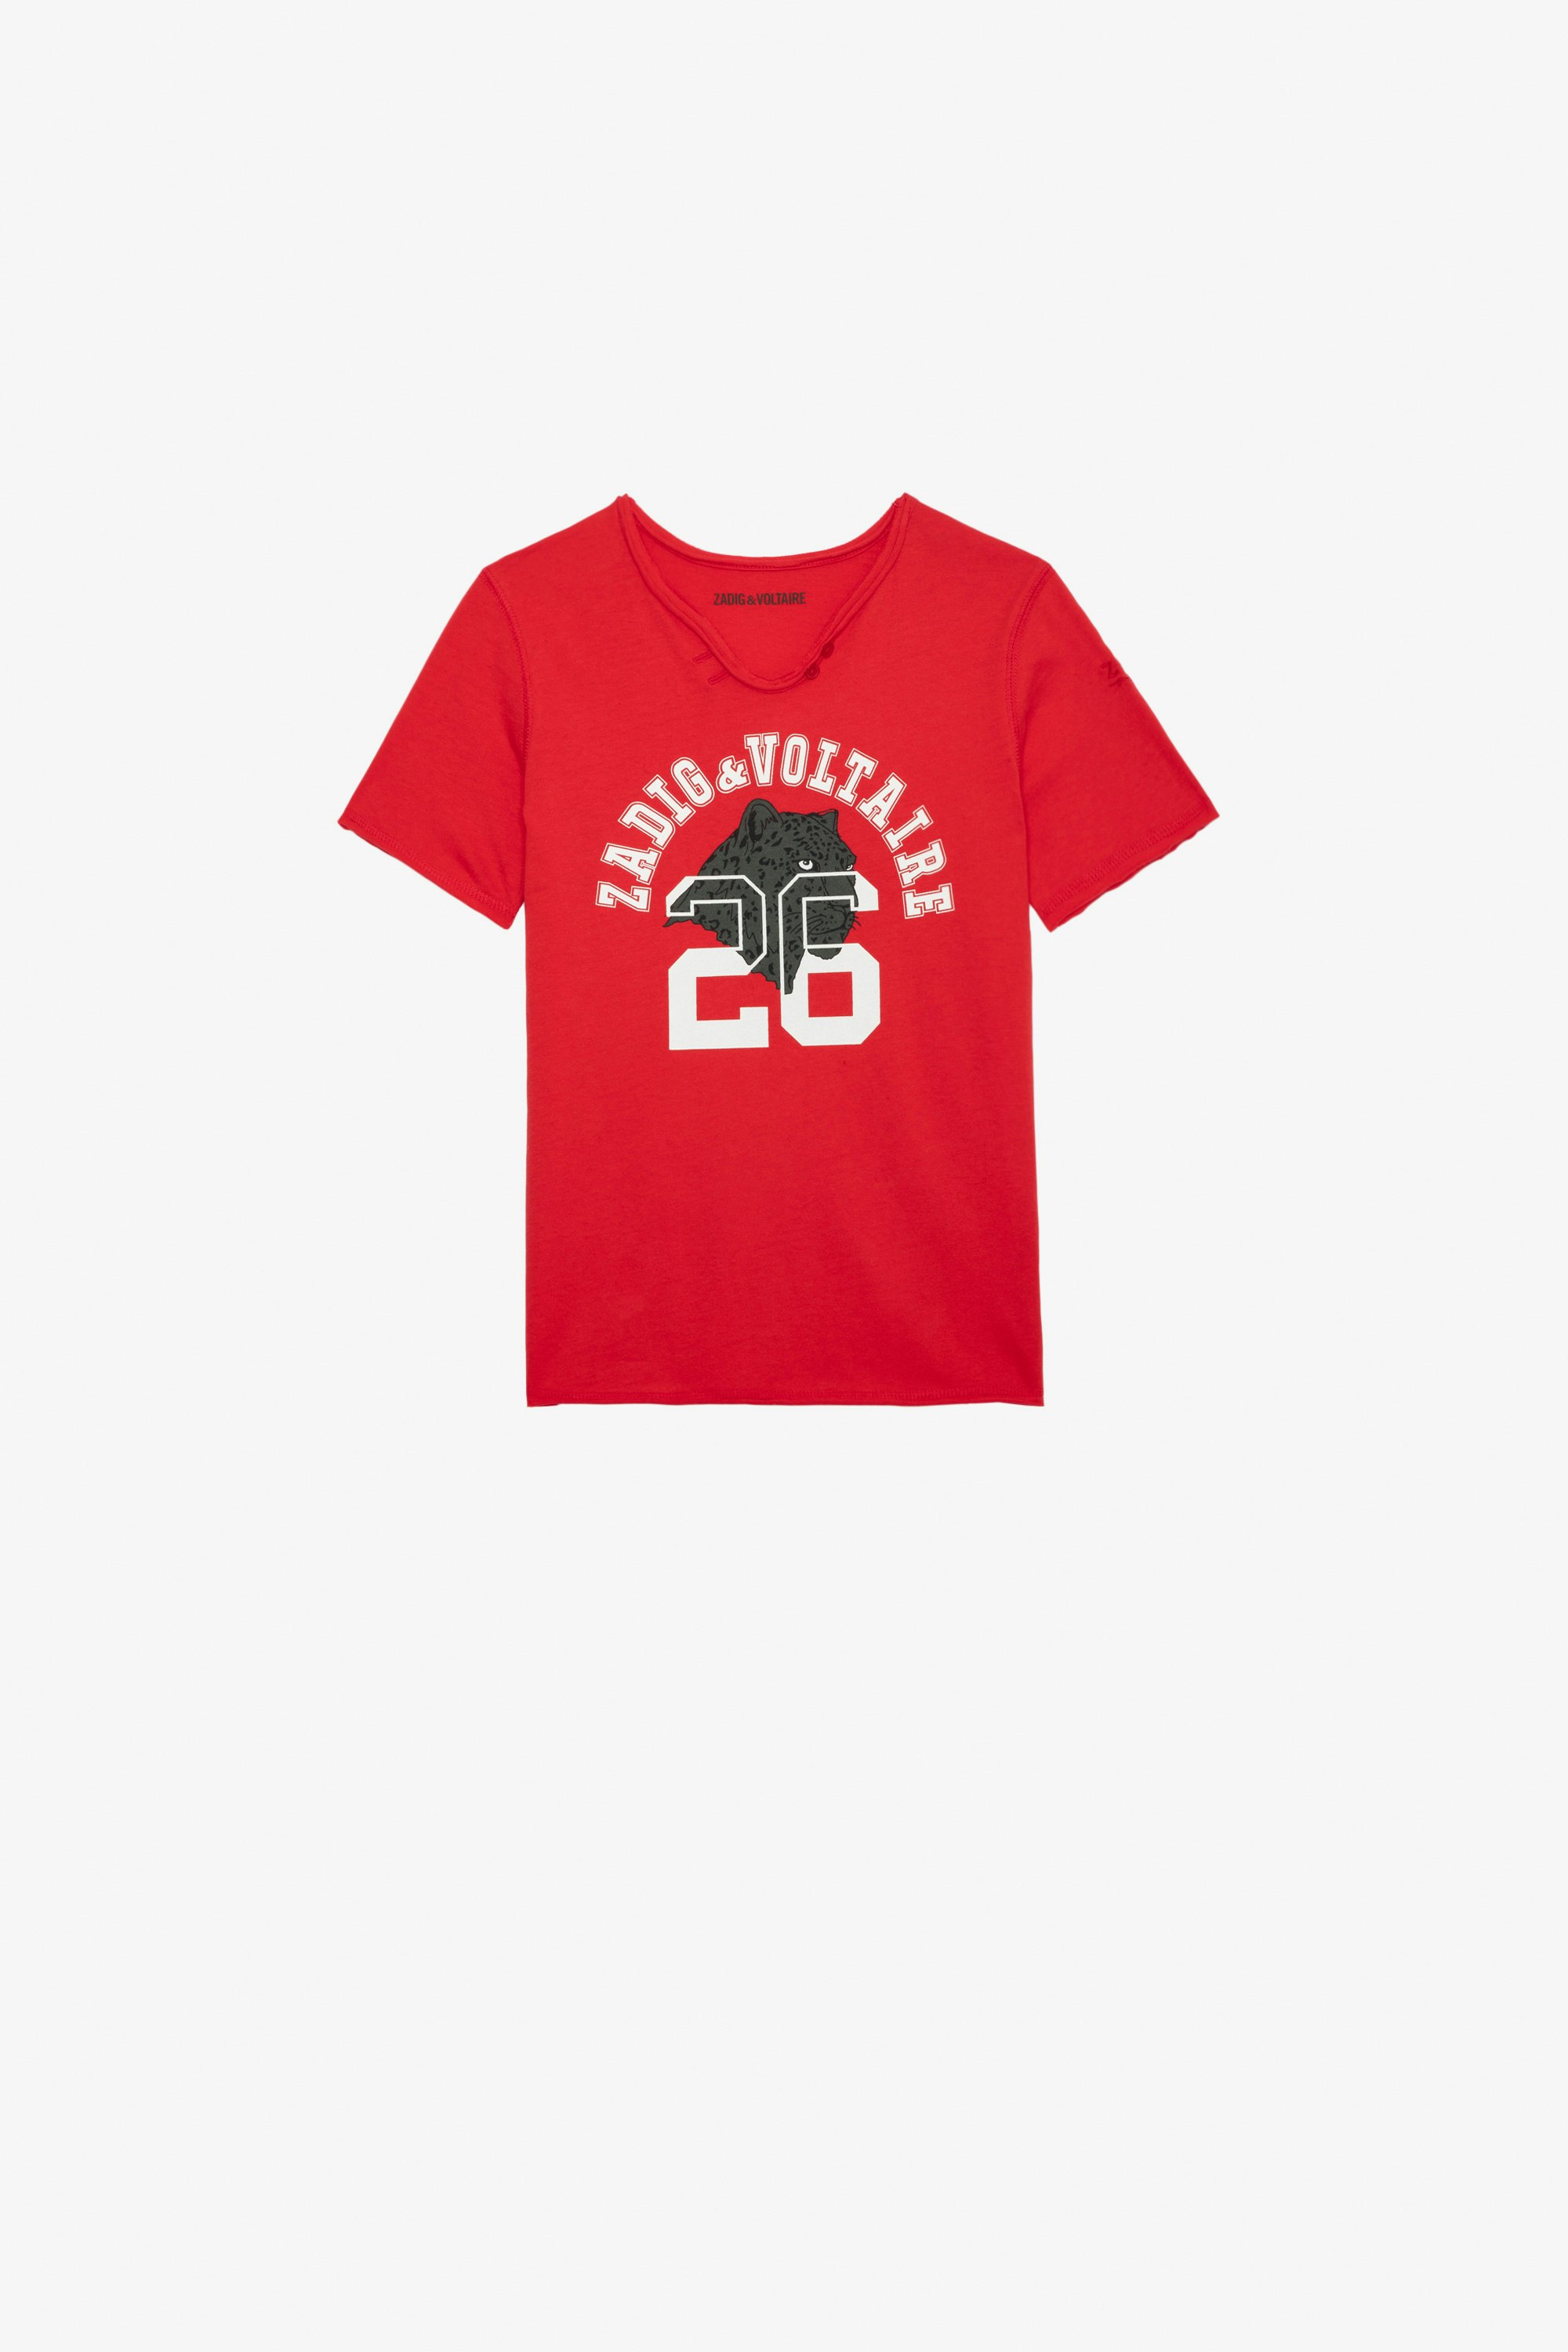 T-Shirt Boxer für Jungen - T-Shirt mit kurzen Ärmeln aus roter Jersey-Baumwolle mit Print für Jungen.